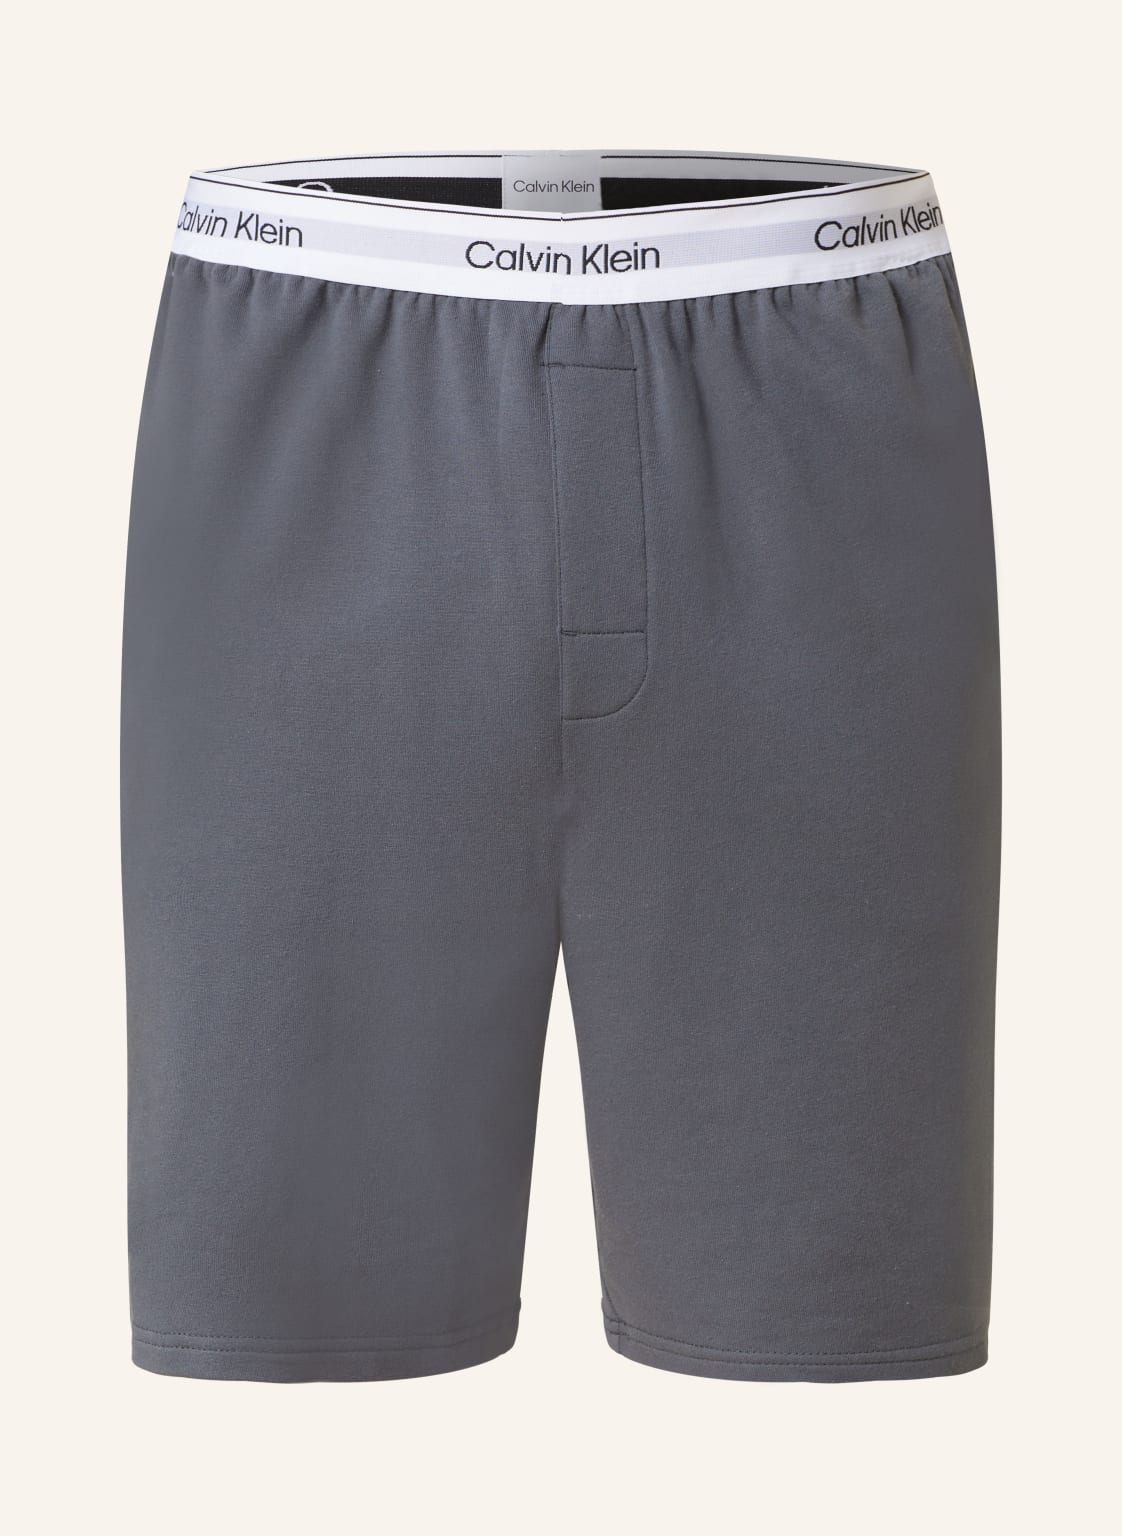 Calvin Klein Schlafshorts Modern Cotton grau von Calvin Klein